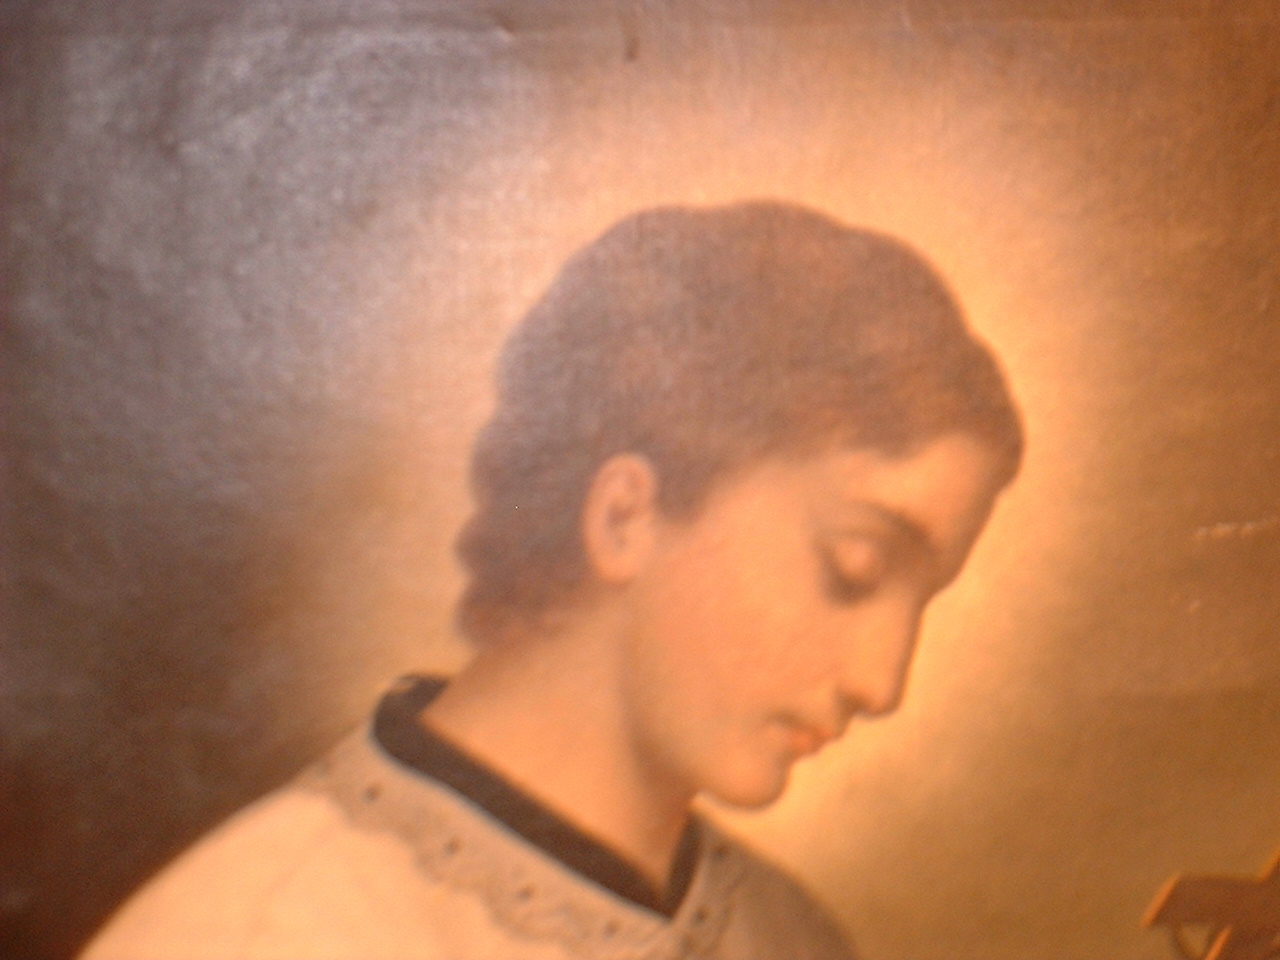 Old master oil painting on canvas. Catholic saint.